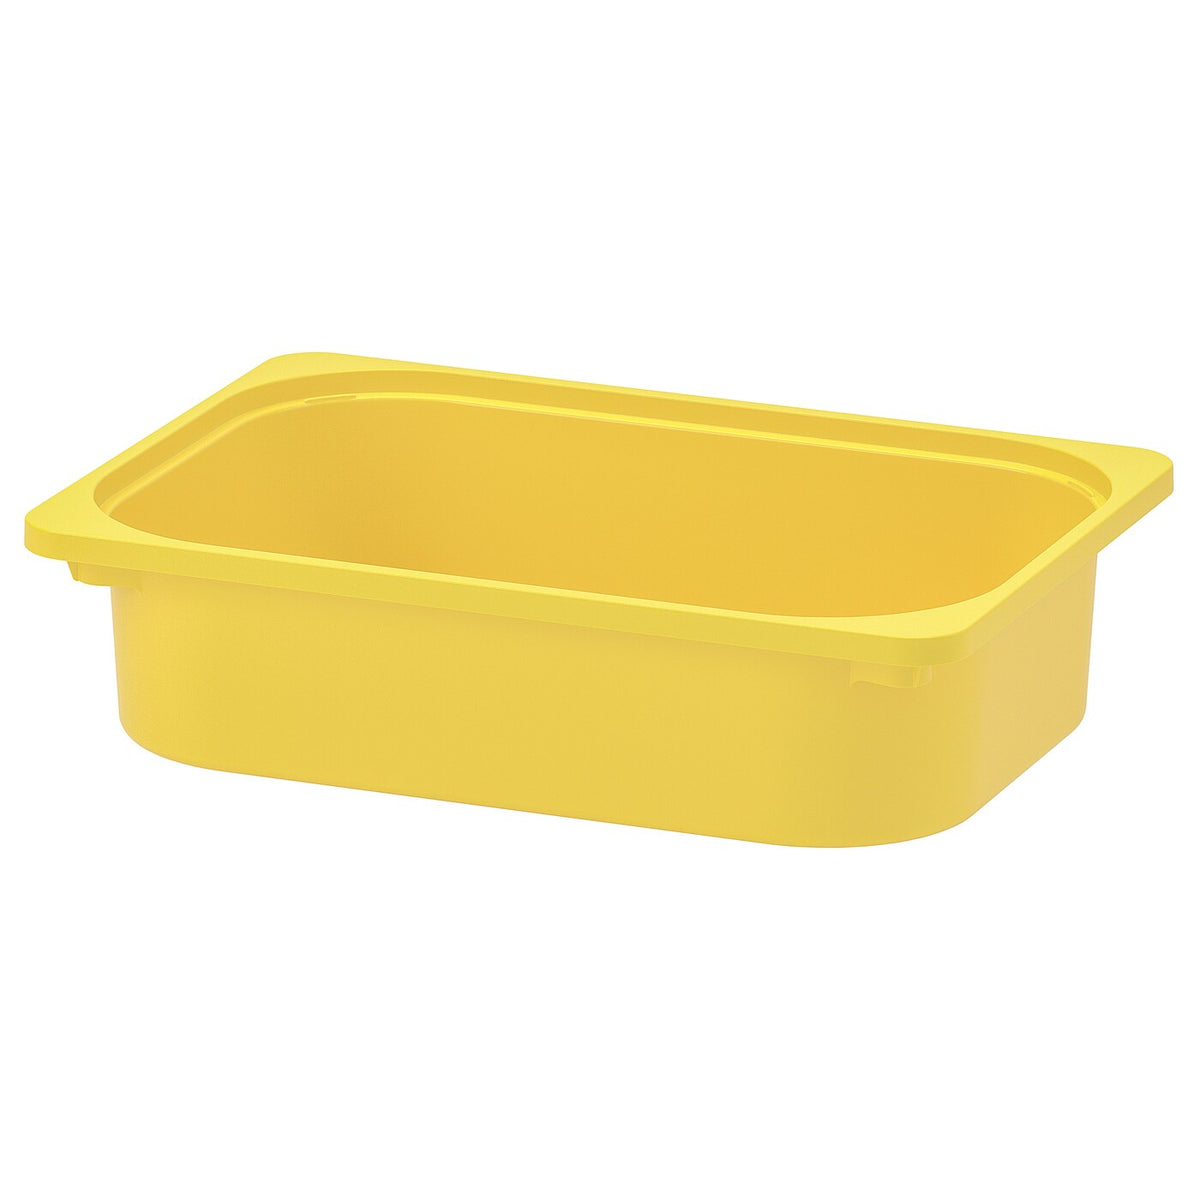 IKEA TROFAST storage box, small yellow, 42x30x10 cm